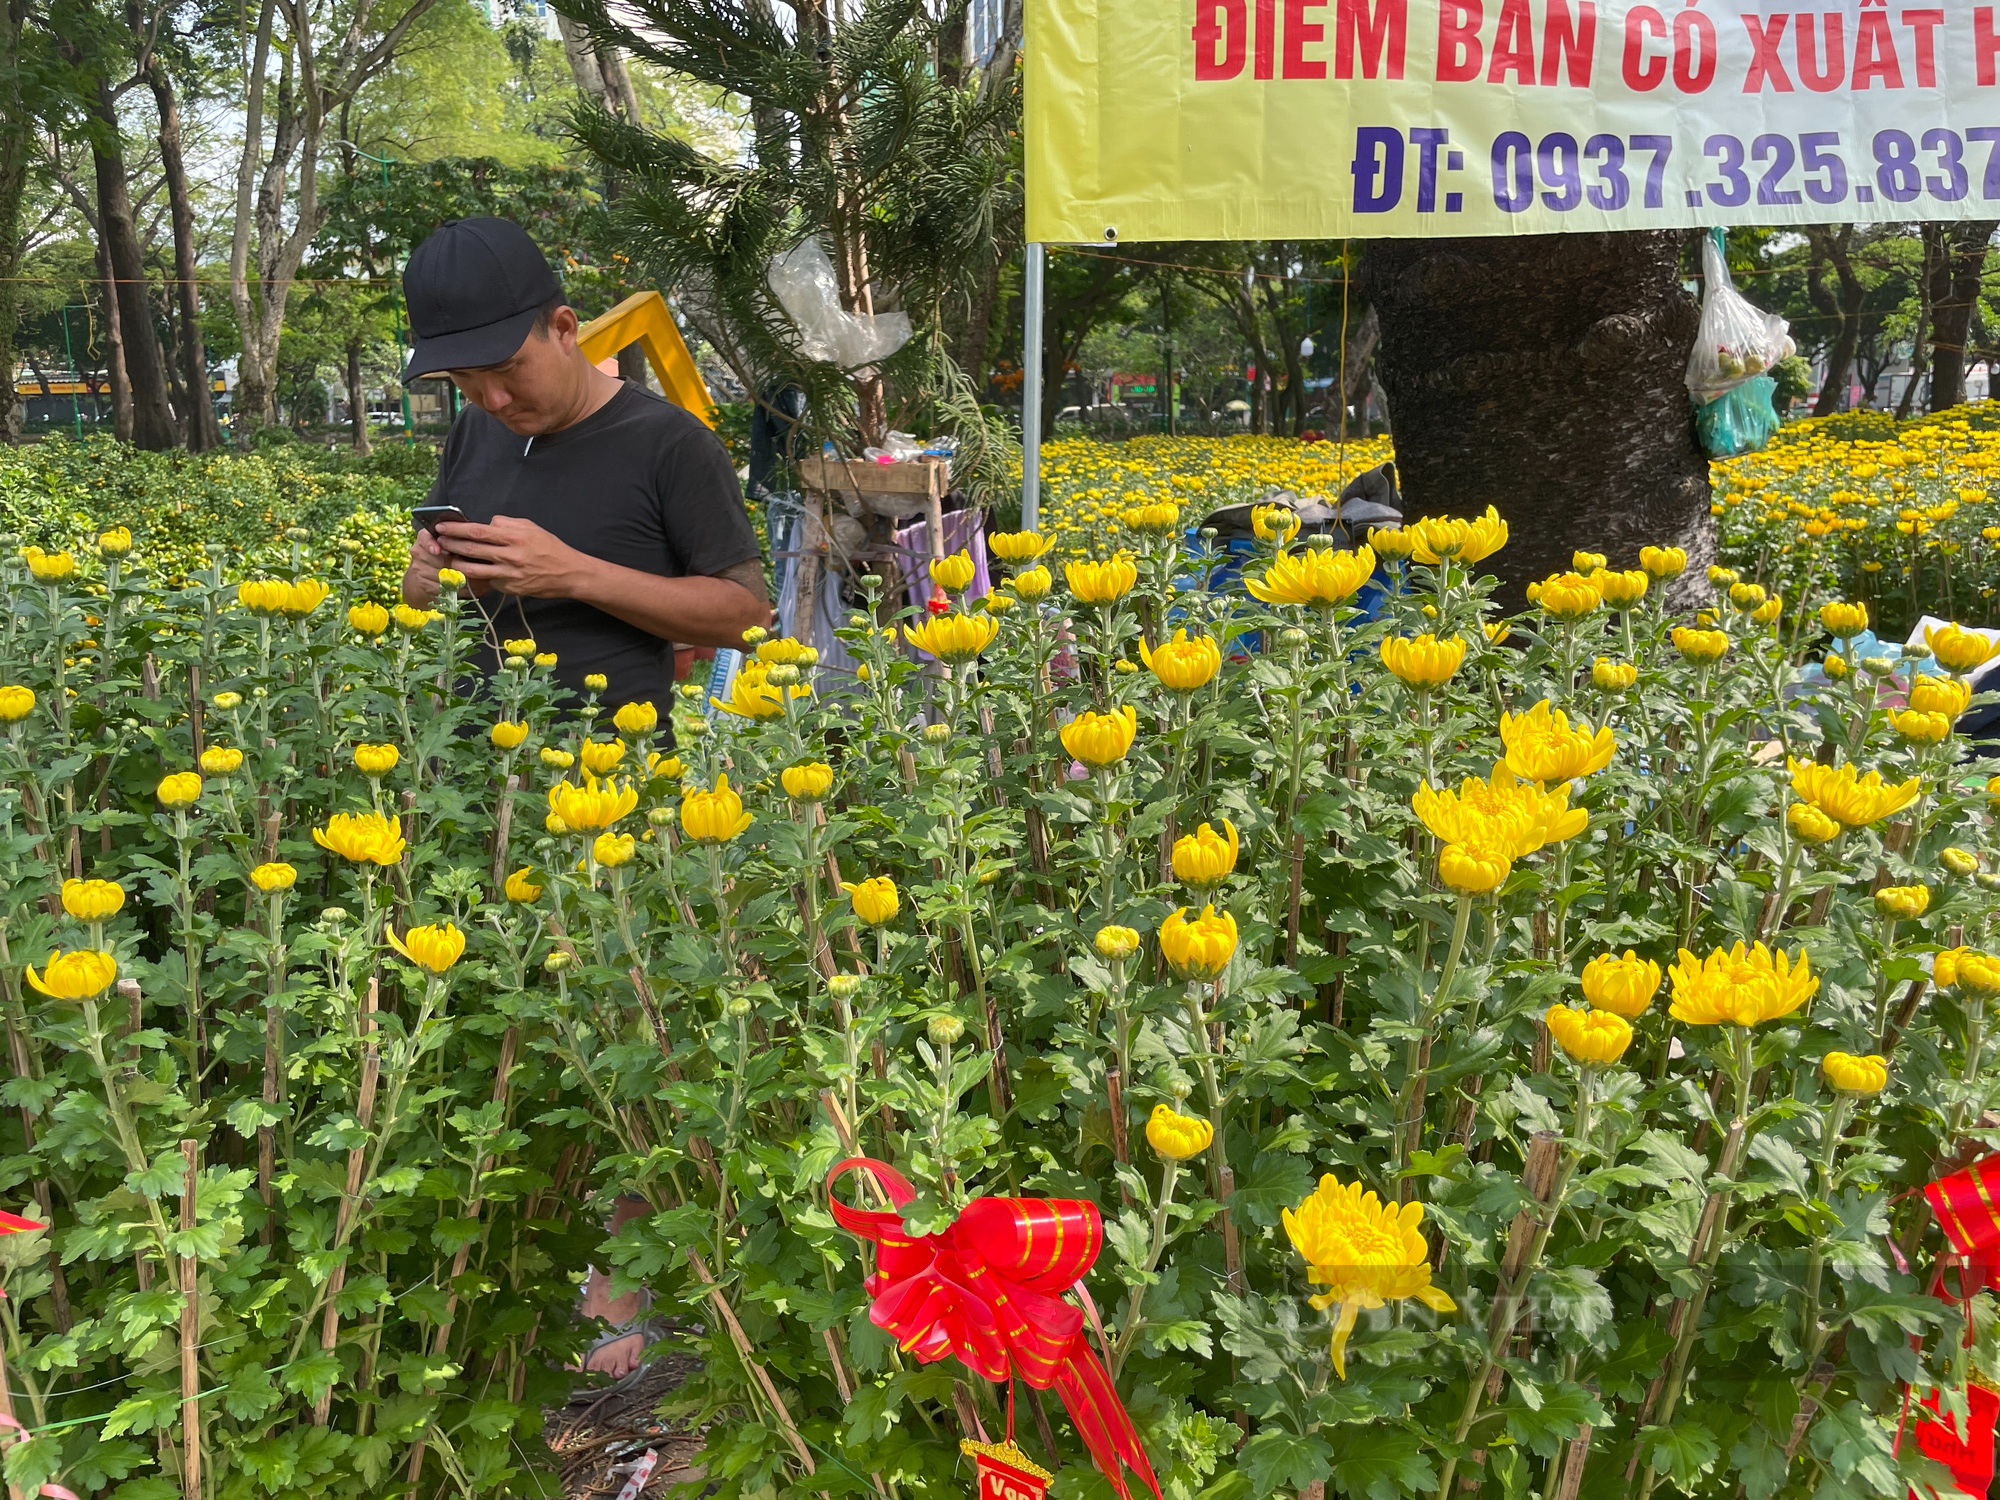 ẢNH: Hoa kiểng vừa xuống chợ hoa xuân, người Sài Gòn rinh về chơi Tết sớm - Ảnh 6.